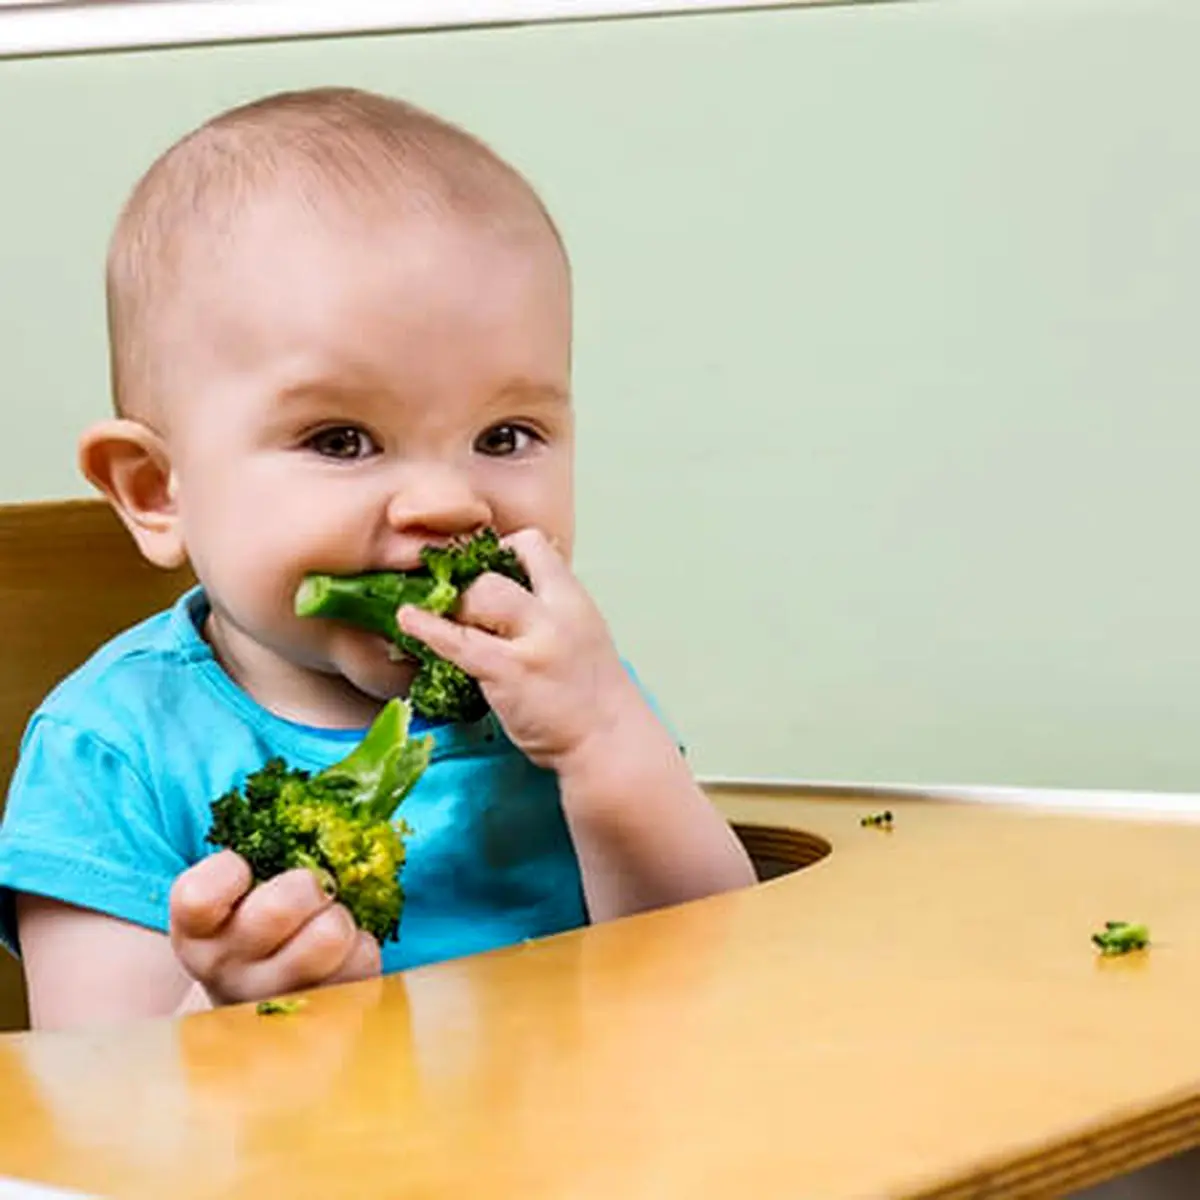 از چه زمانی به فرزندم سبزیجات بدهم؟|تغذیه کودک